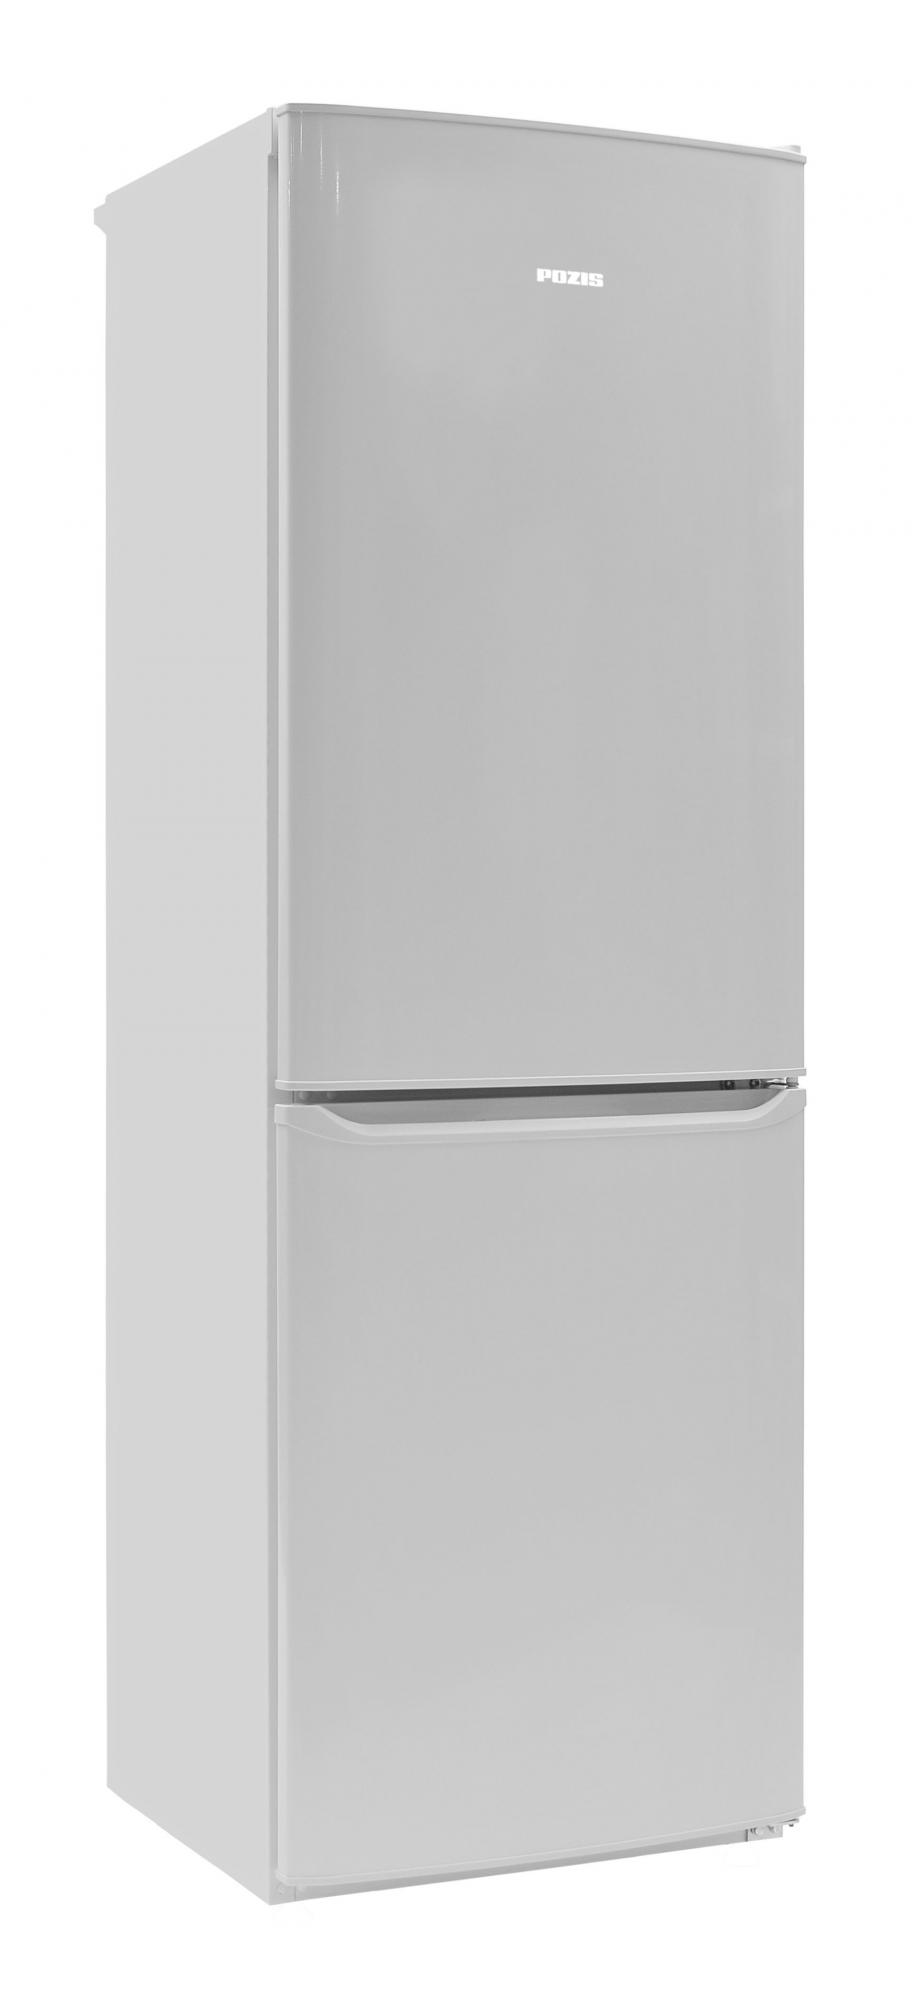 Двухкамерный холодильник POZIS RK-139 белый																		 — описание, фото, цены в интернет-магазине Премьер Техно